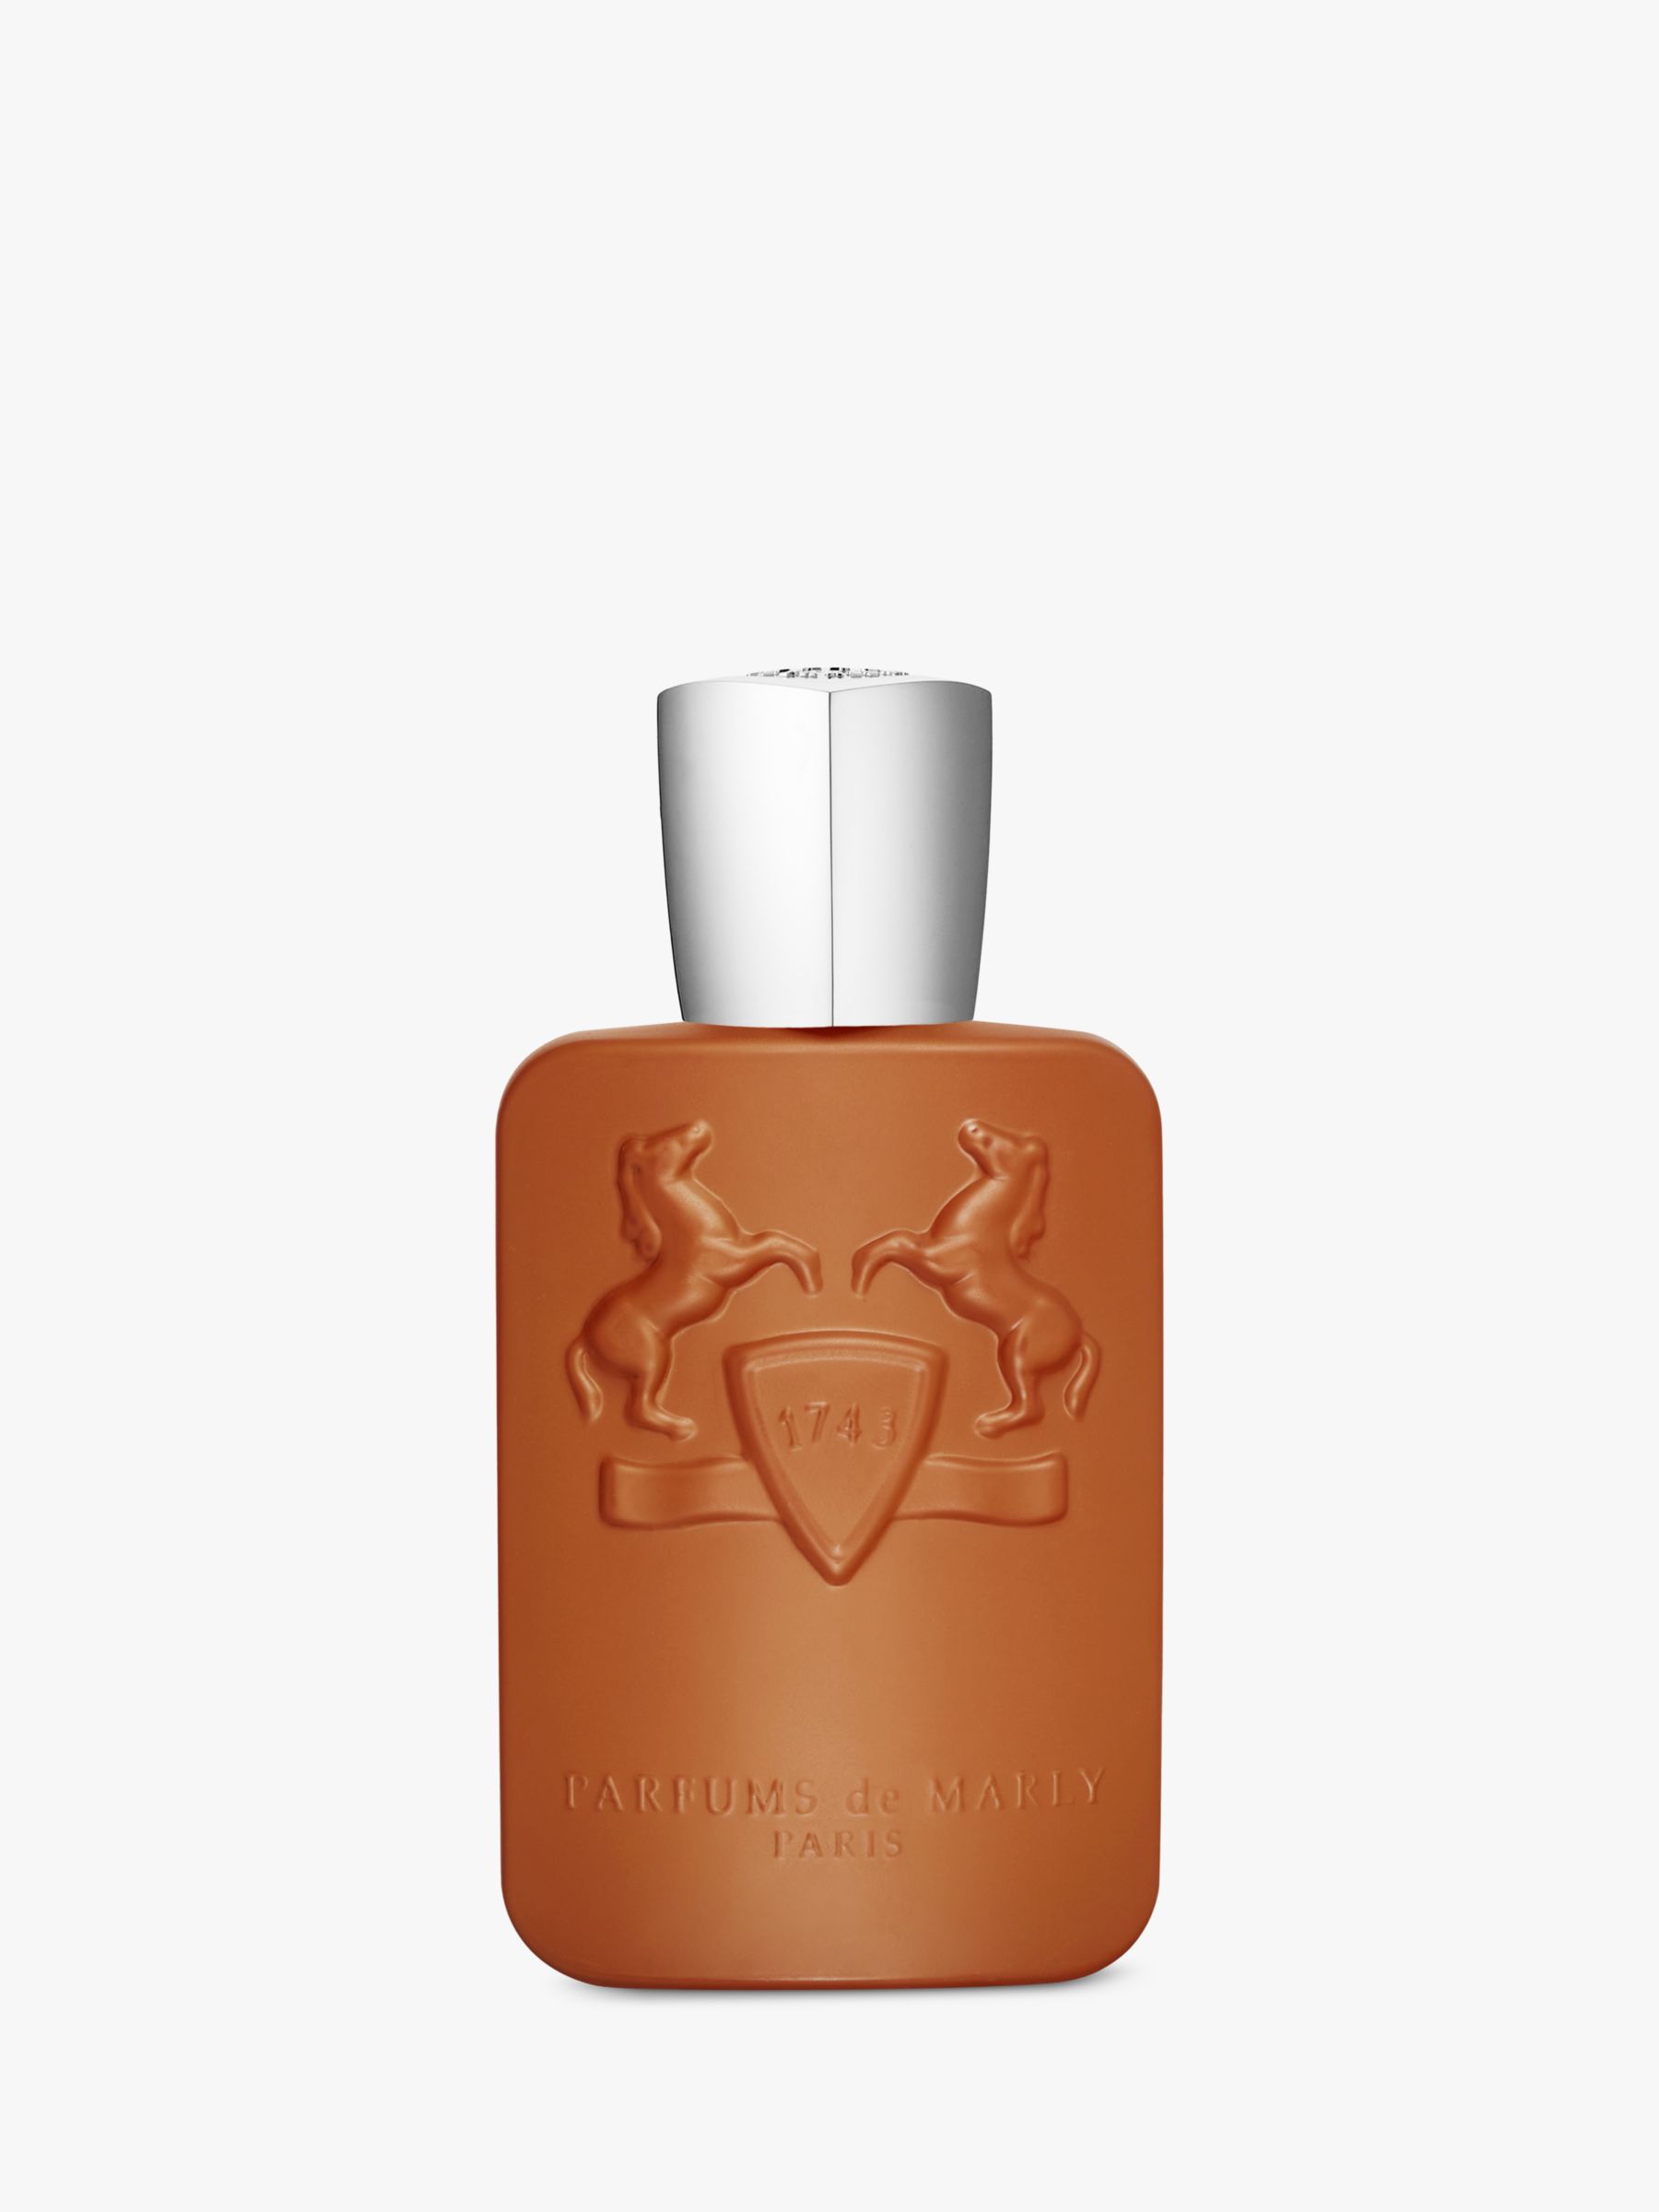 Parfums de Marly Althair Eau de Parfum, 125ml